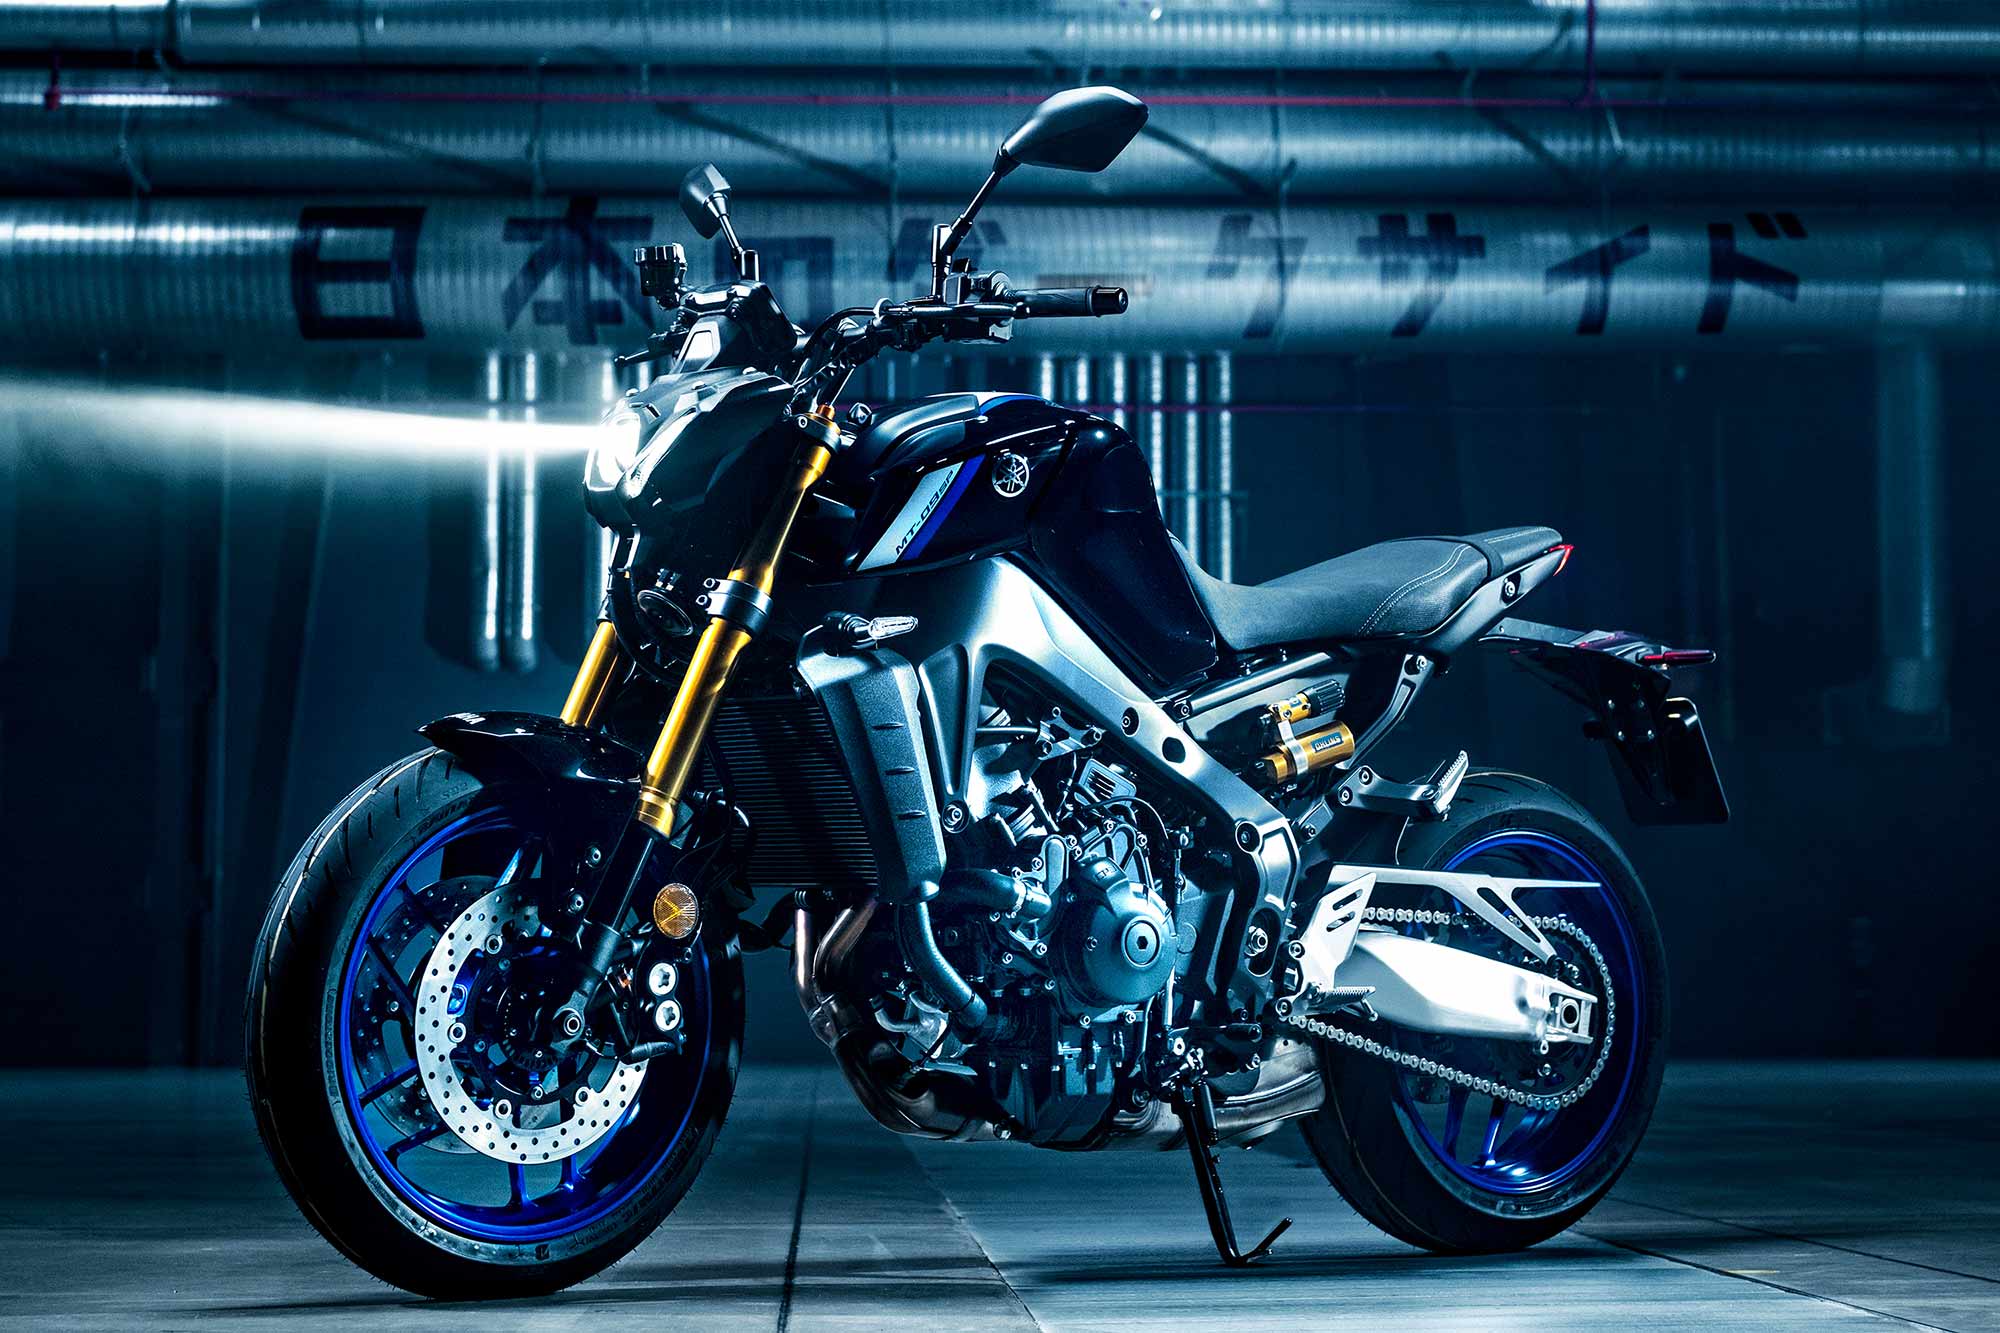 Yamaha MT-09 (2021) - Long-term review